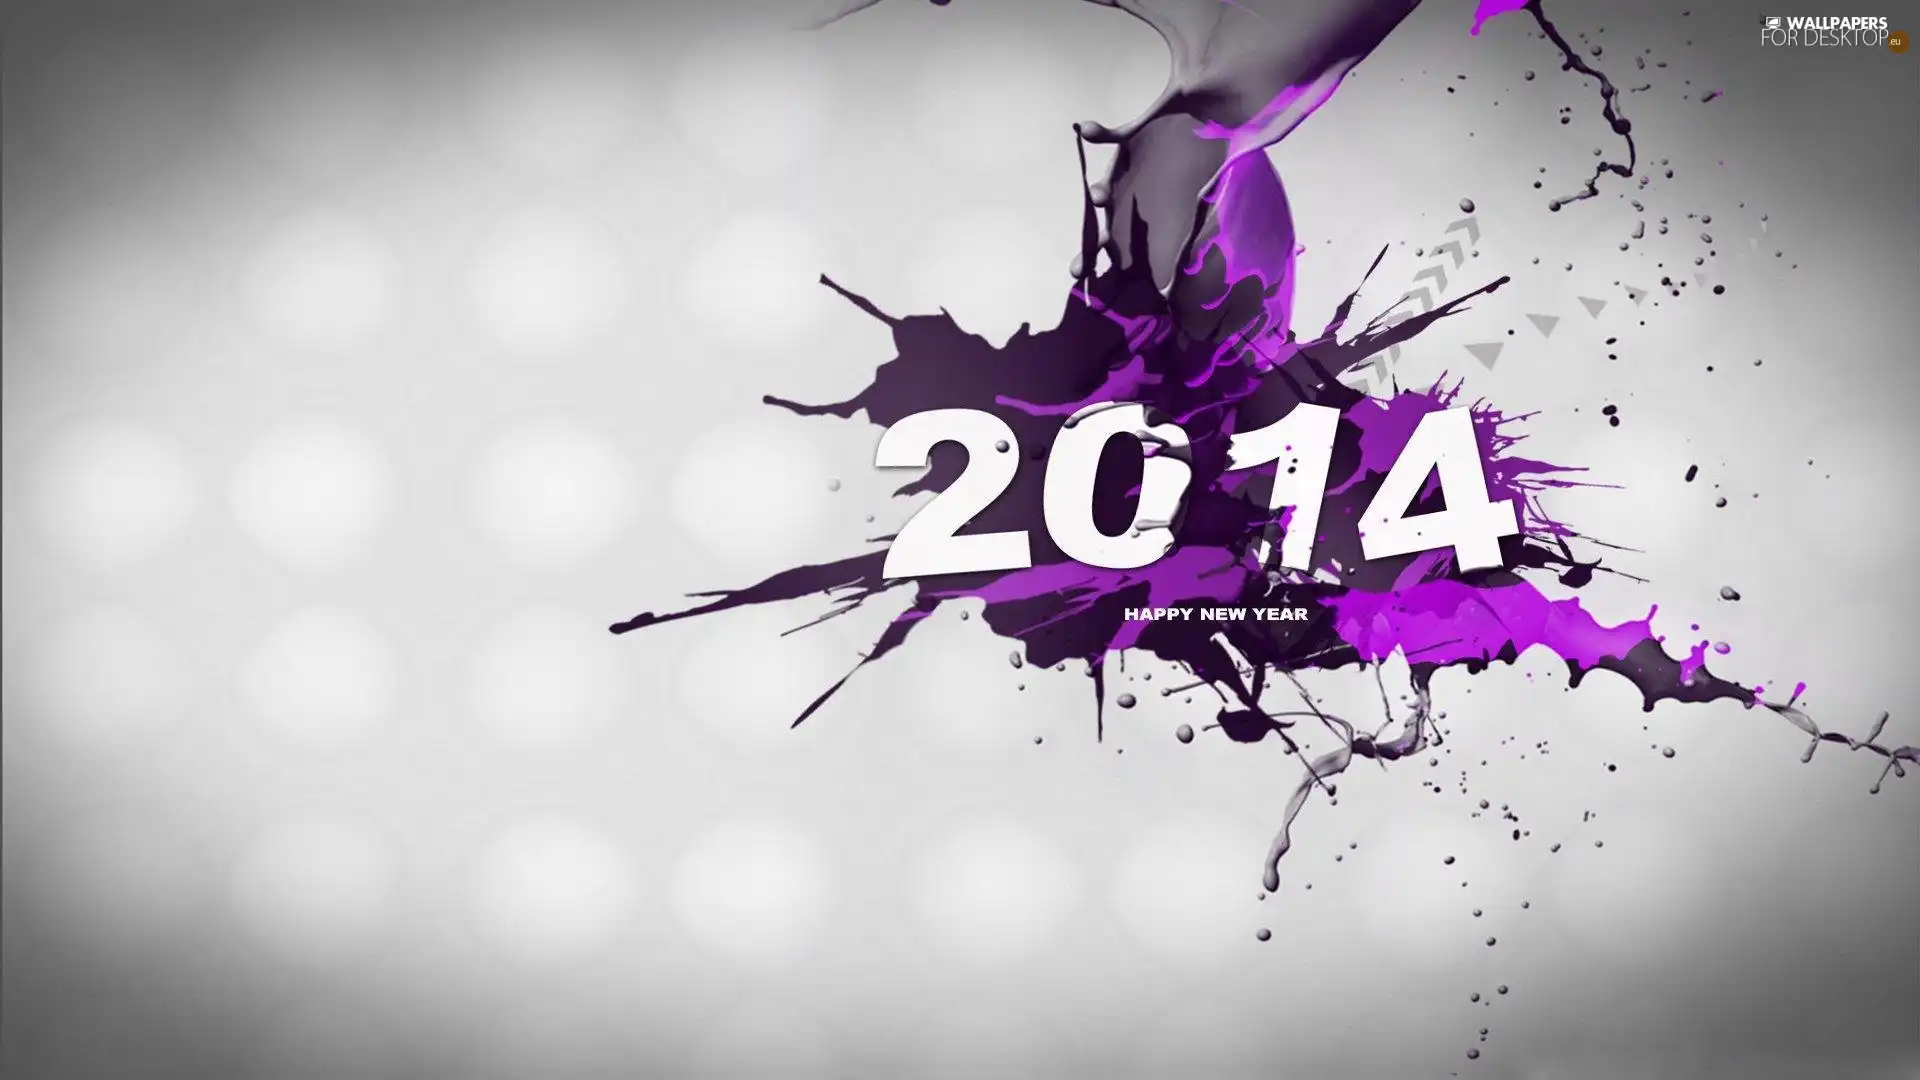 2014, Purple, blur